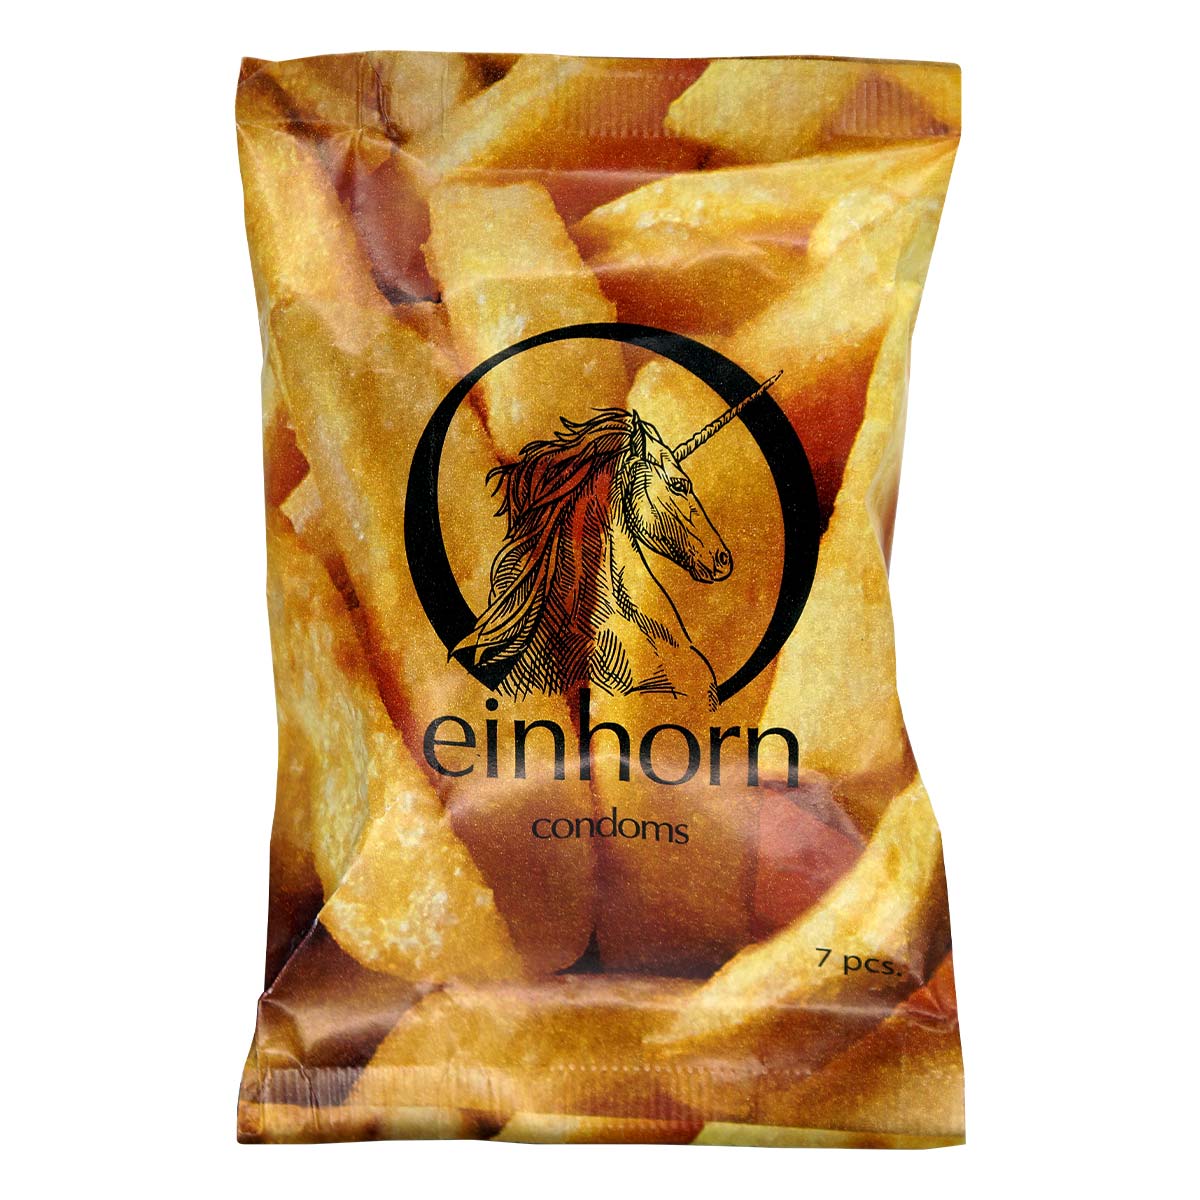 Einhorn Foodporn Vegan Condom 7's Pack Latex Condom-p_2